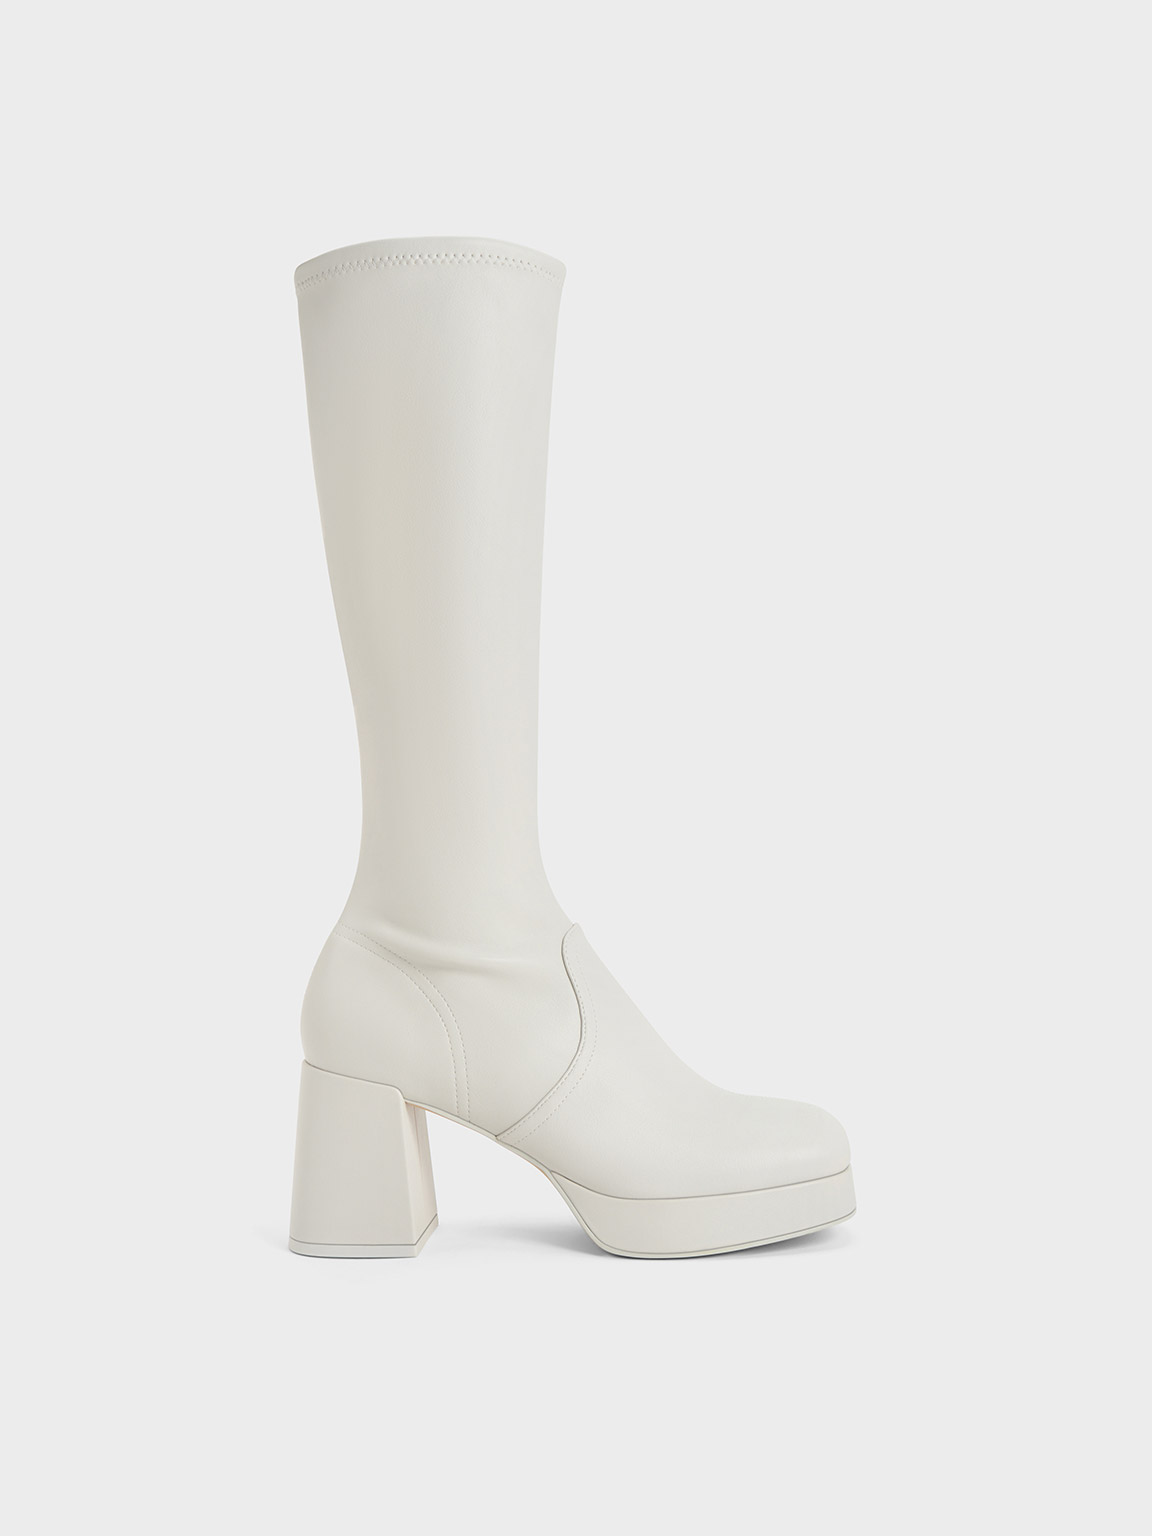 Evie Platform Block-Heel Knee-High Boots